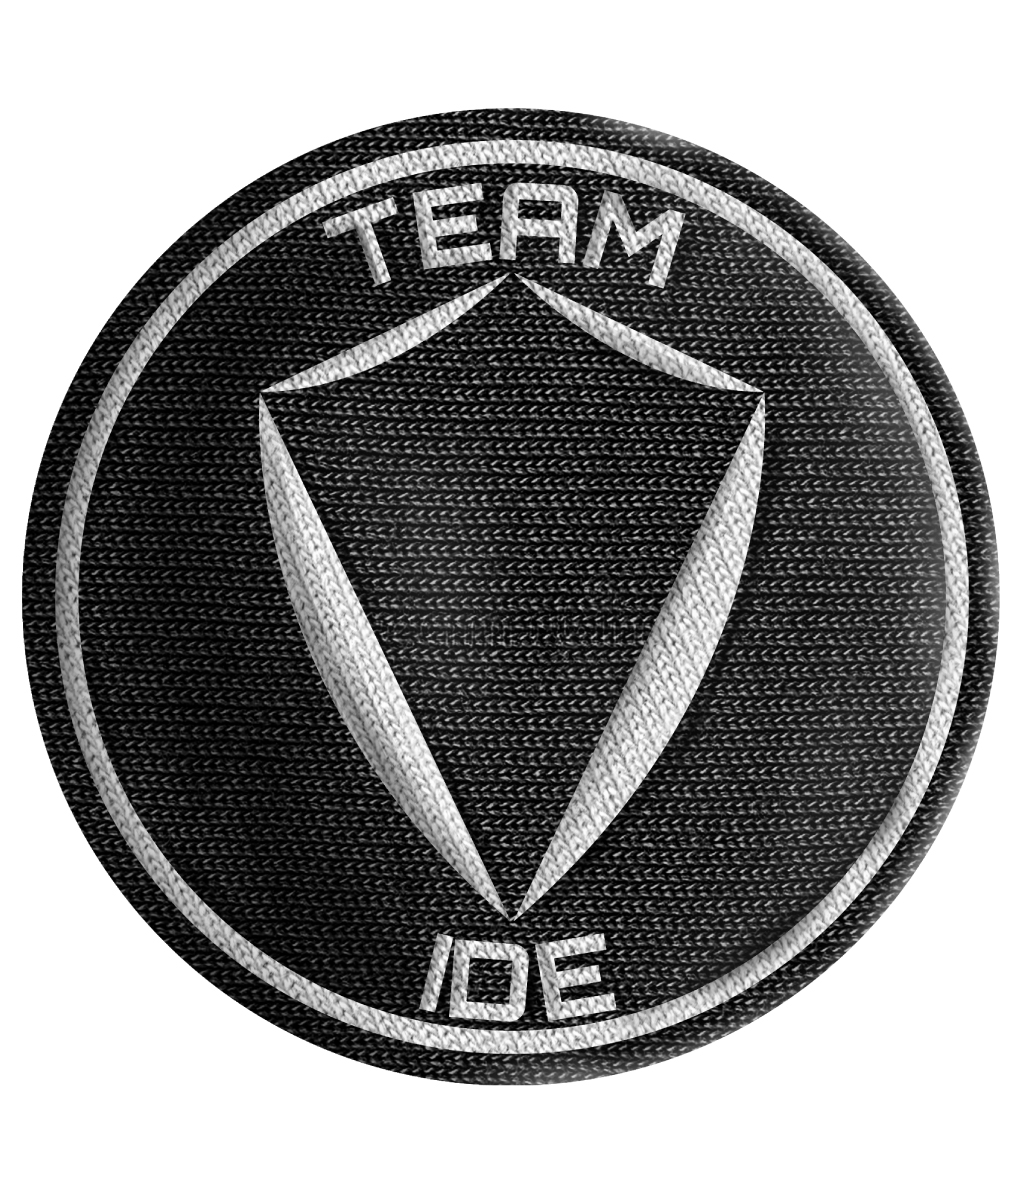 Team-Ide Logo